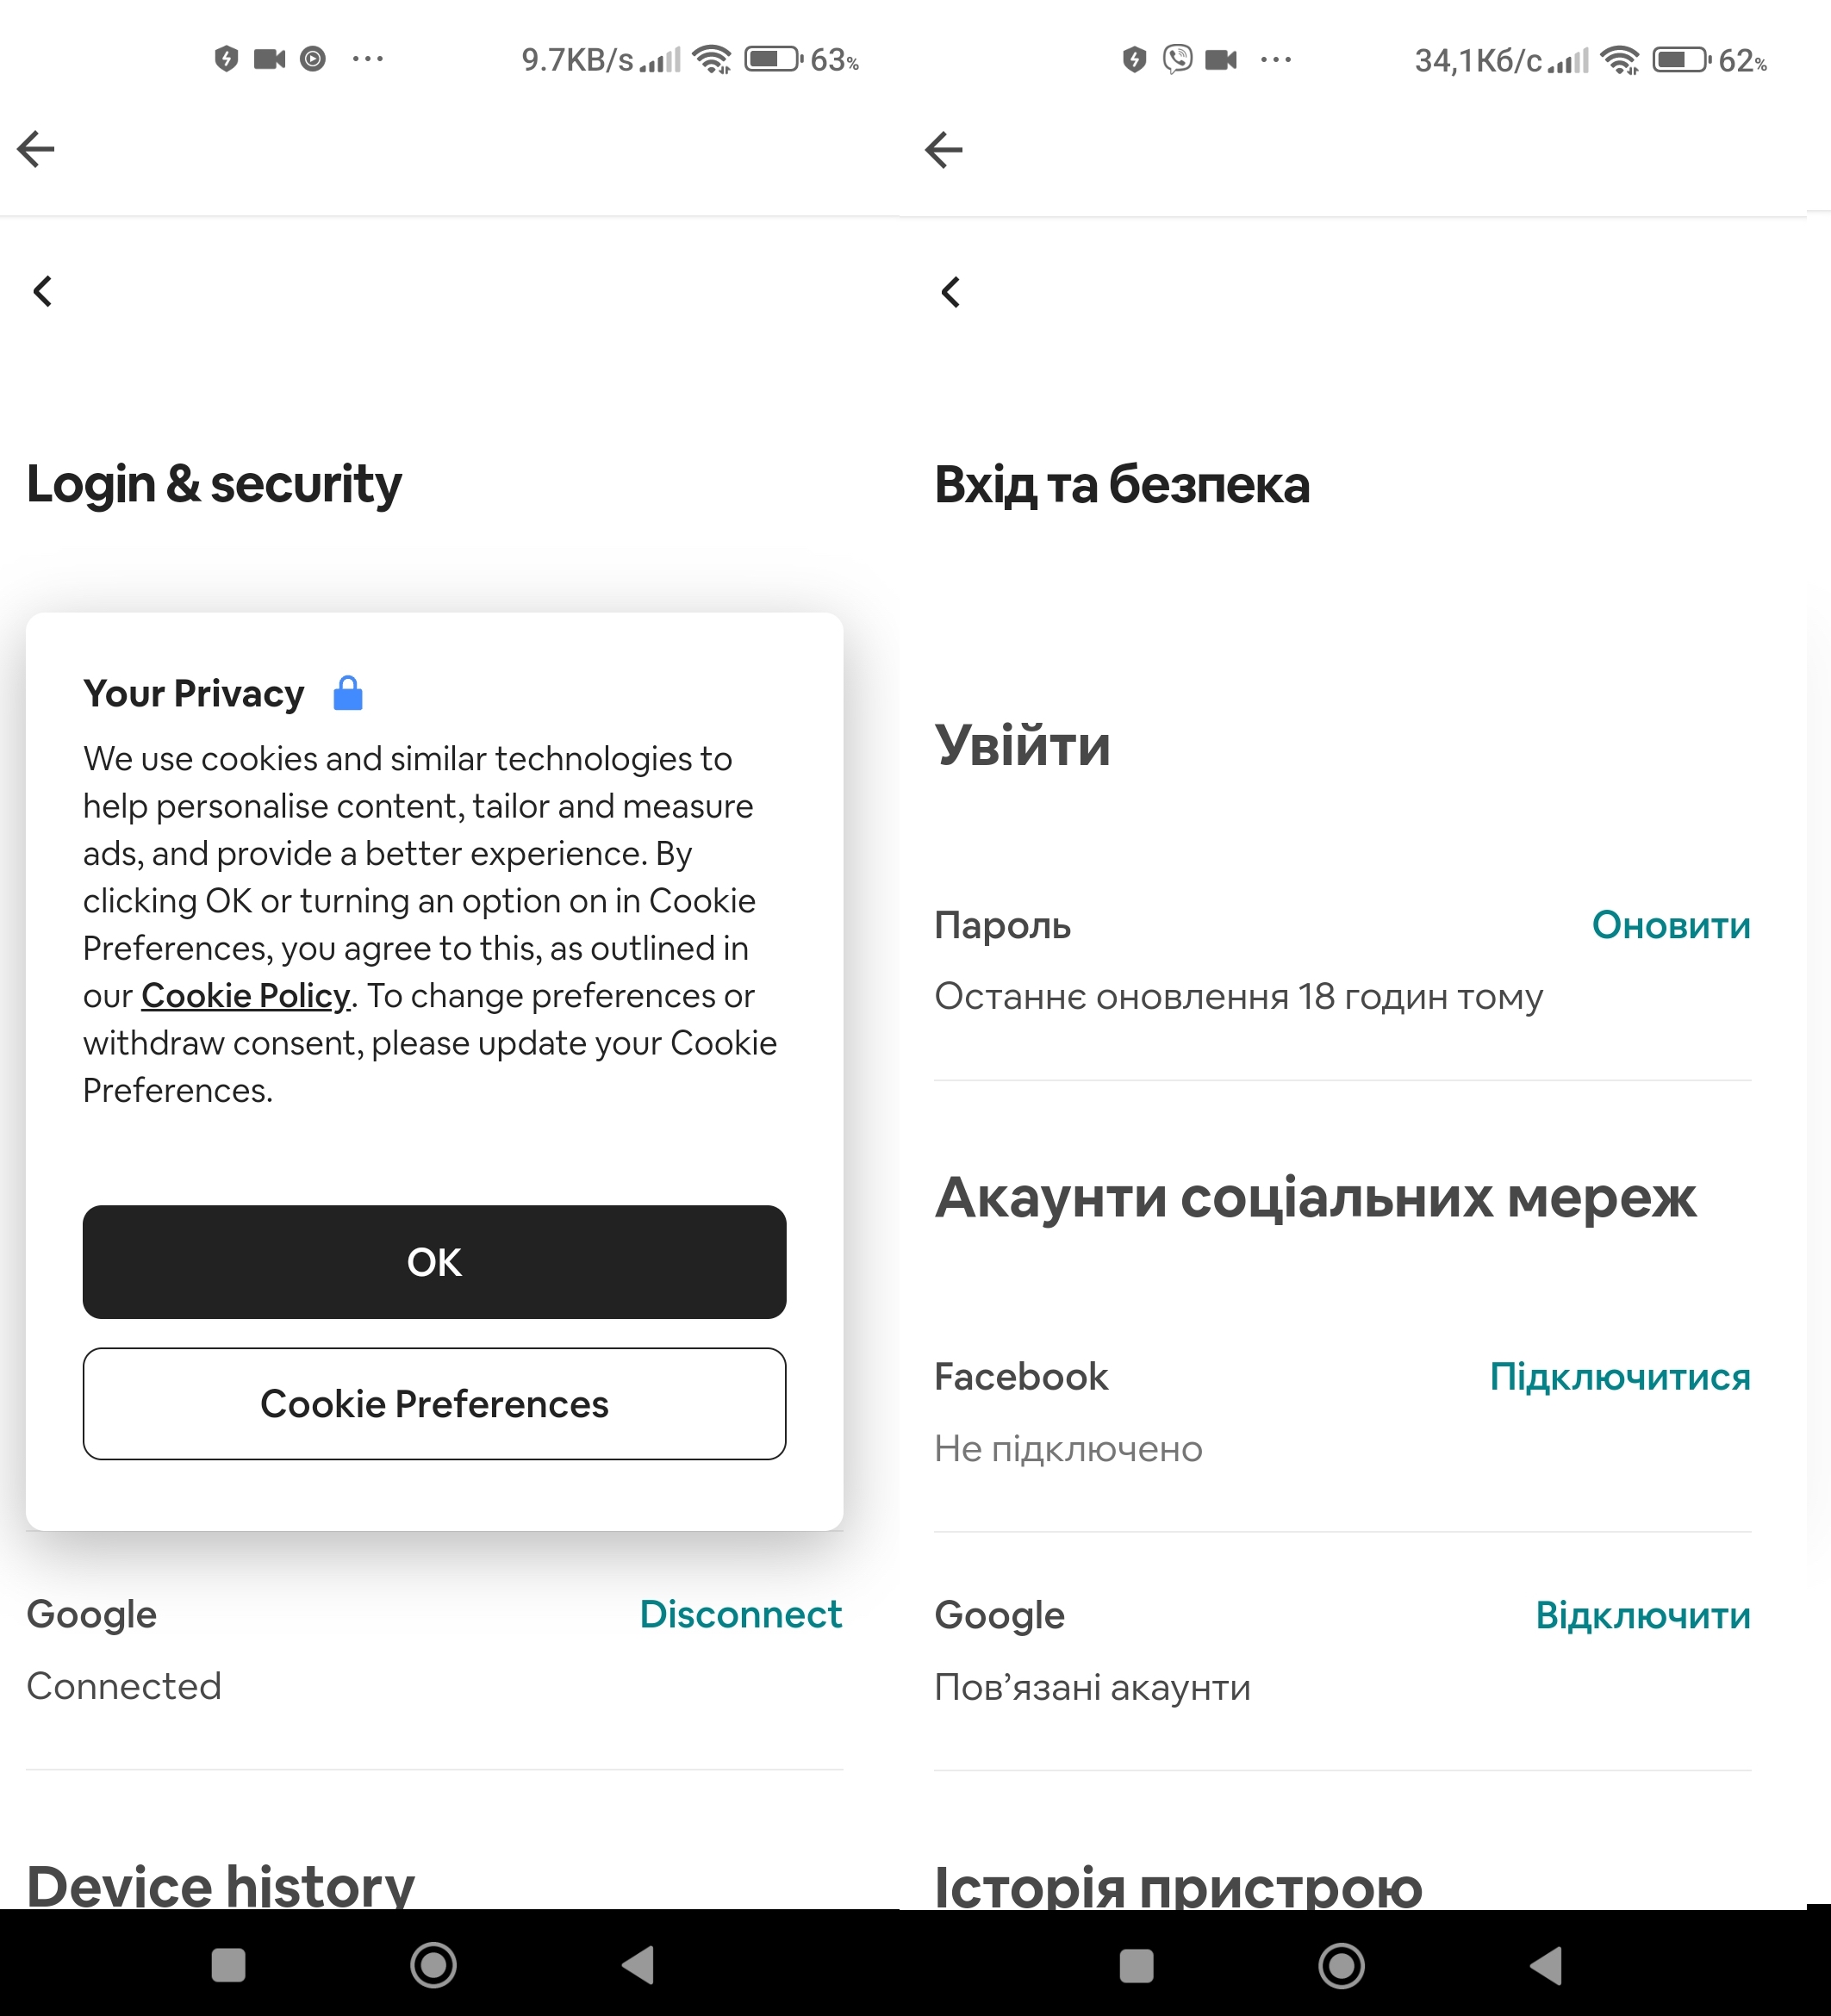 La versión ucraniana de la aplicación no tiene banner de cookies